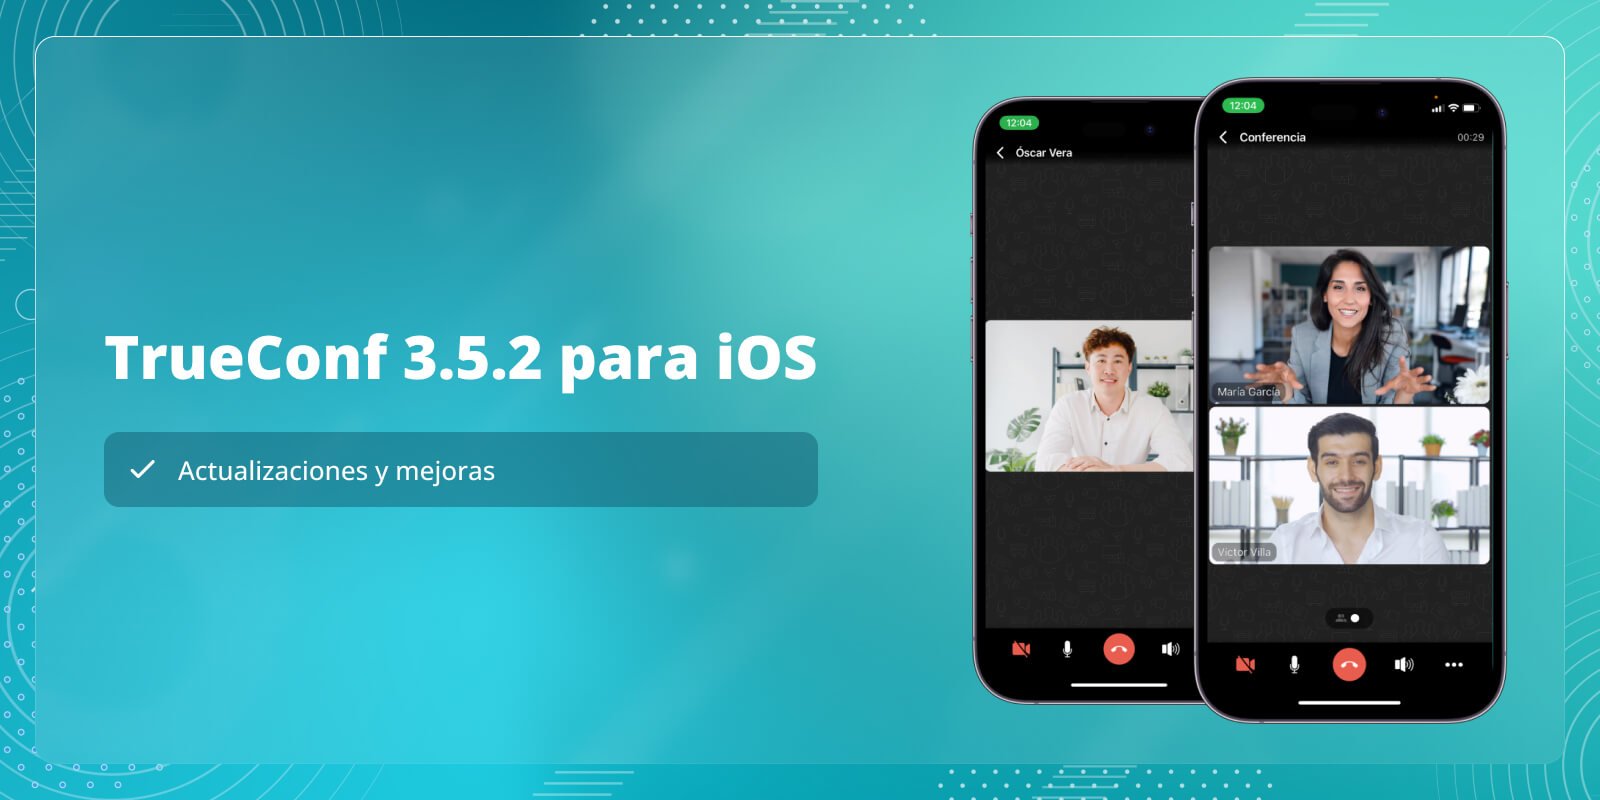 TrueConf 3.5.2 para iOS: actualizaciones y mejoras 4